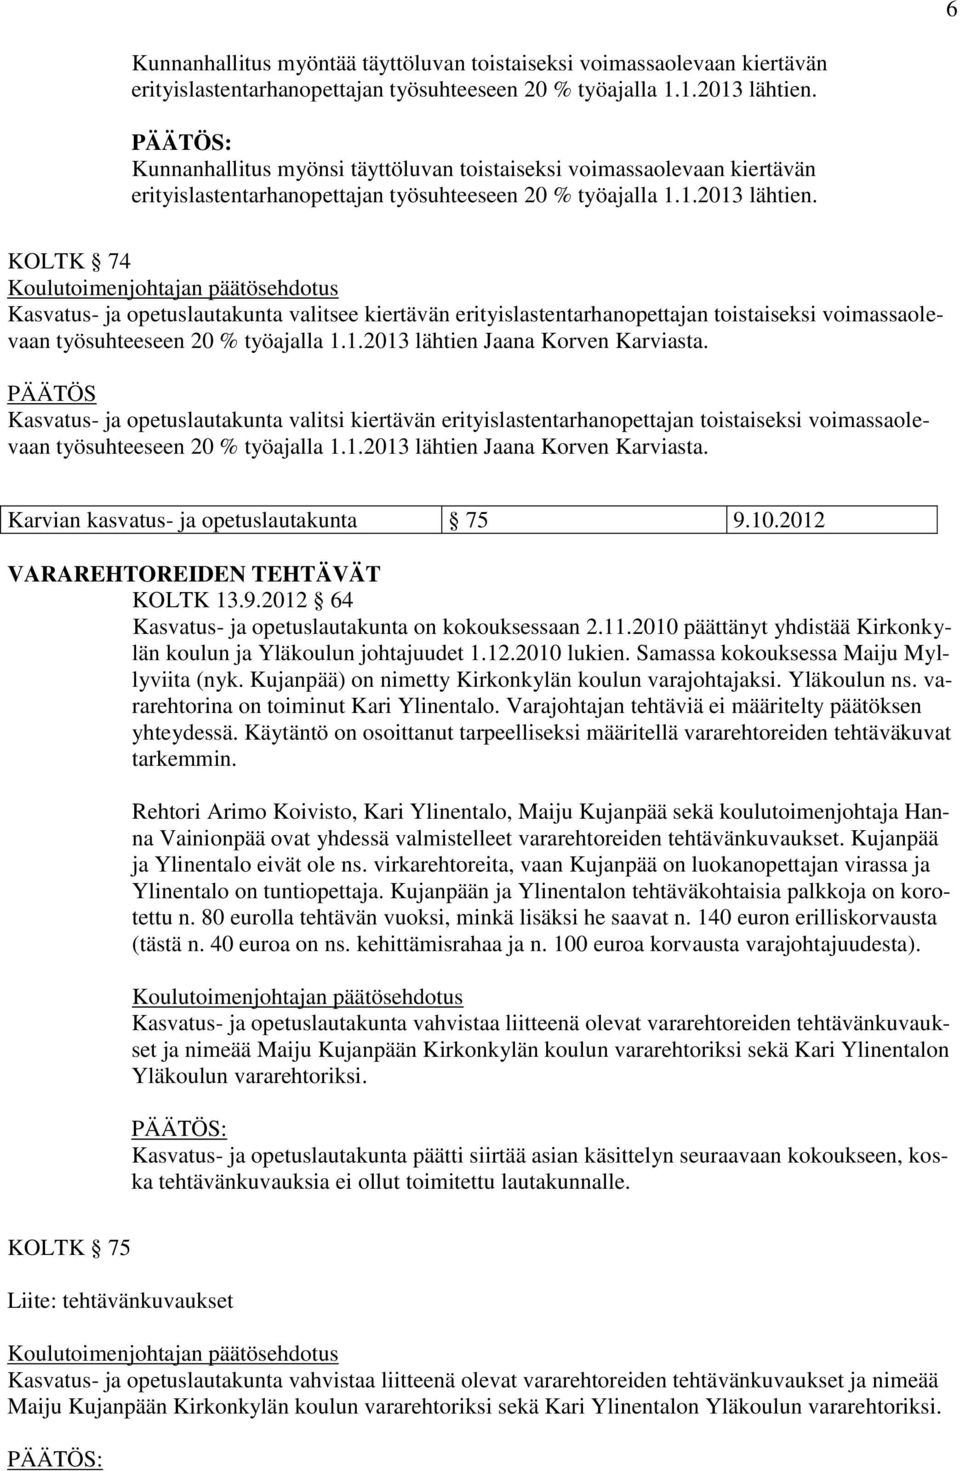 KOLTK 74 Kasvatus- ja opetuslautakunta valitsee kiertävän erityislastentarhanopettajan toistaiseksi voimassaolevaan työsuhteeseen 20 % työajalla 1.1.2013 lähtien Jaana Korven Karviasta.